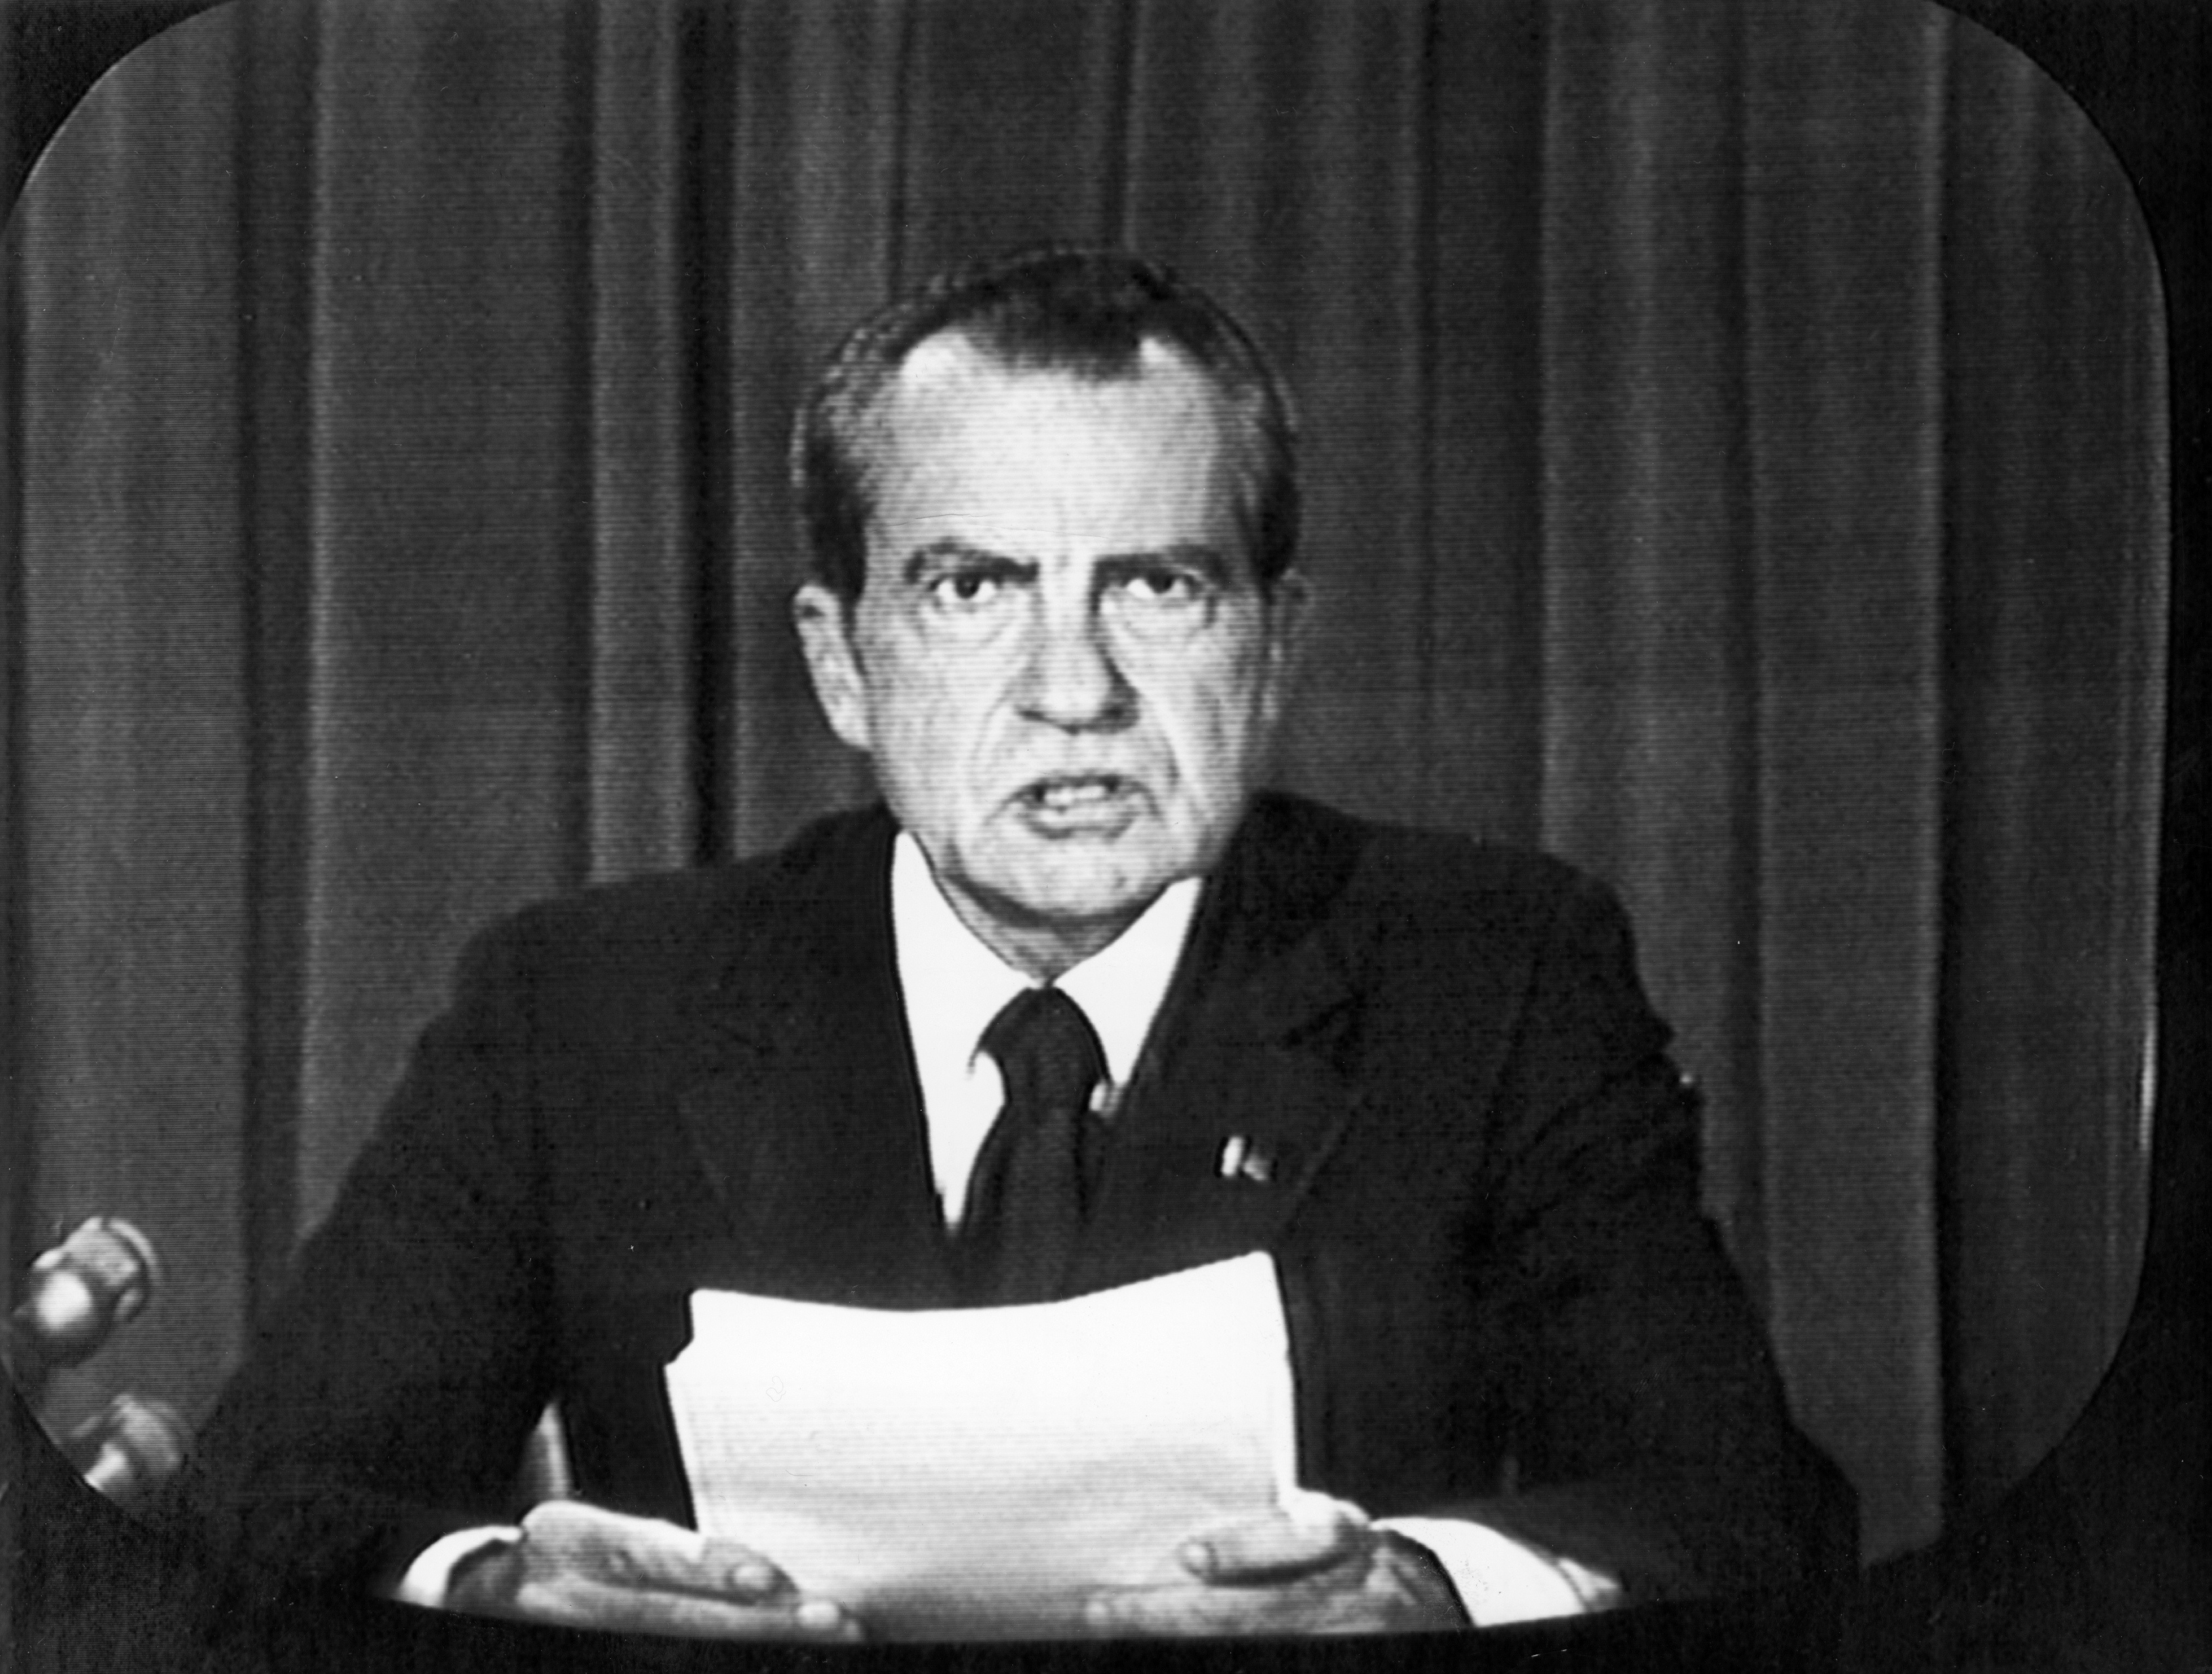 El presidente de EEUU, Richard Nixon, durante el comunicado hecho a la nación y al mundo  a través de las cámaras de televisión, en el que anunció su dimisión como presidente de los Estados Unidos